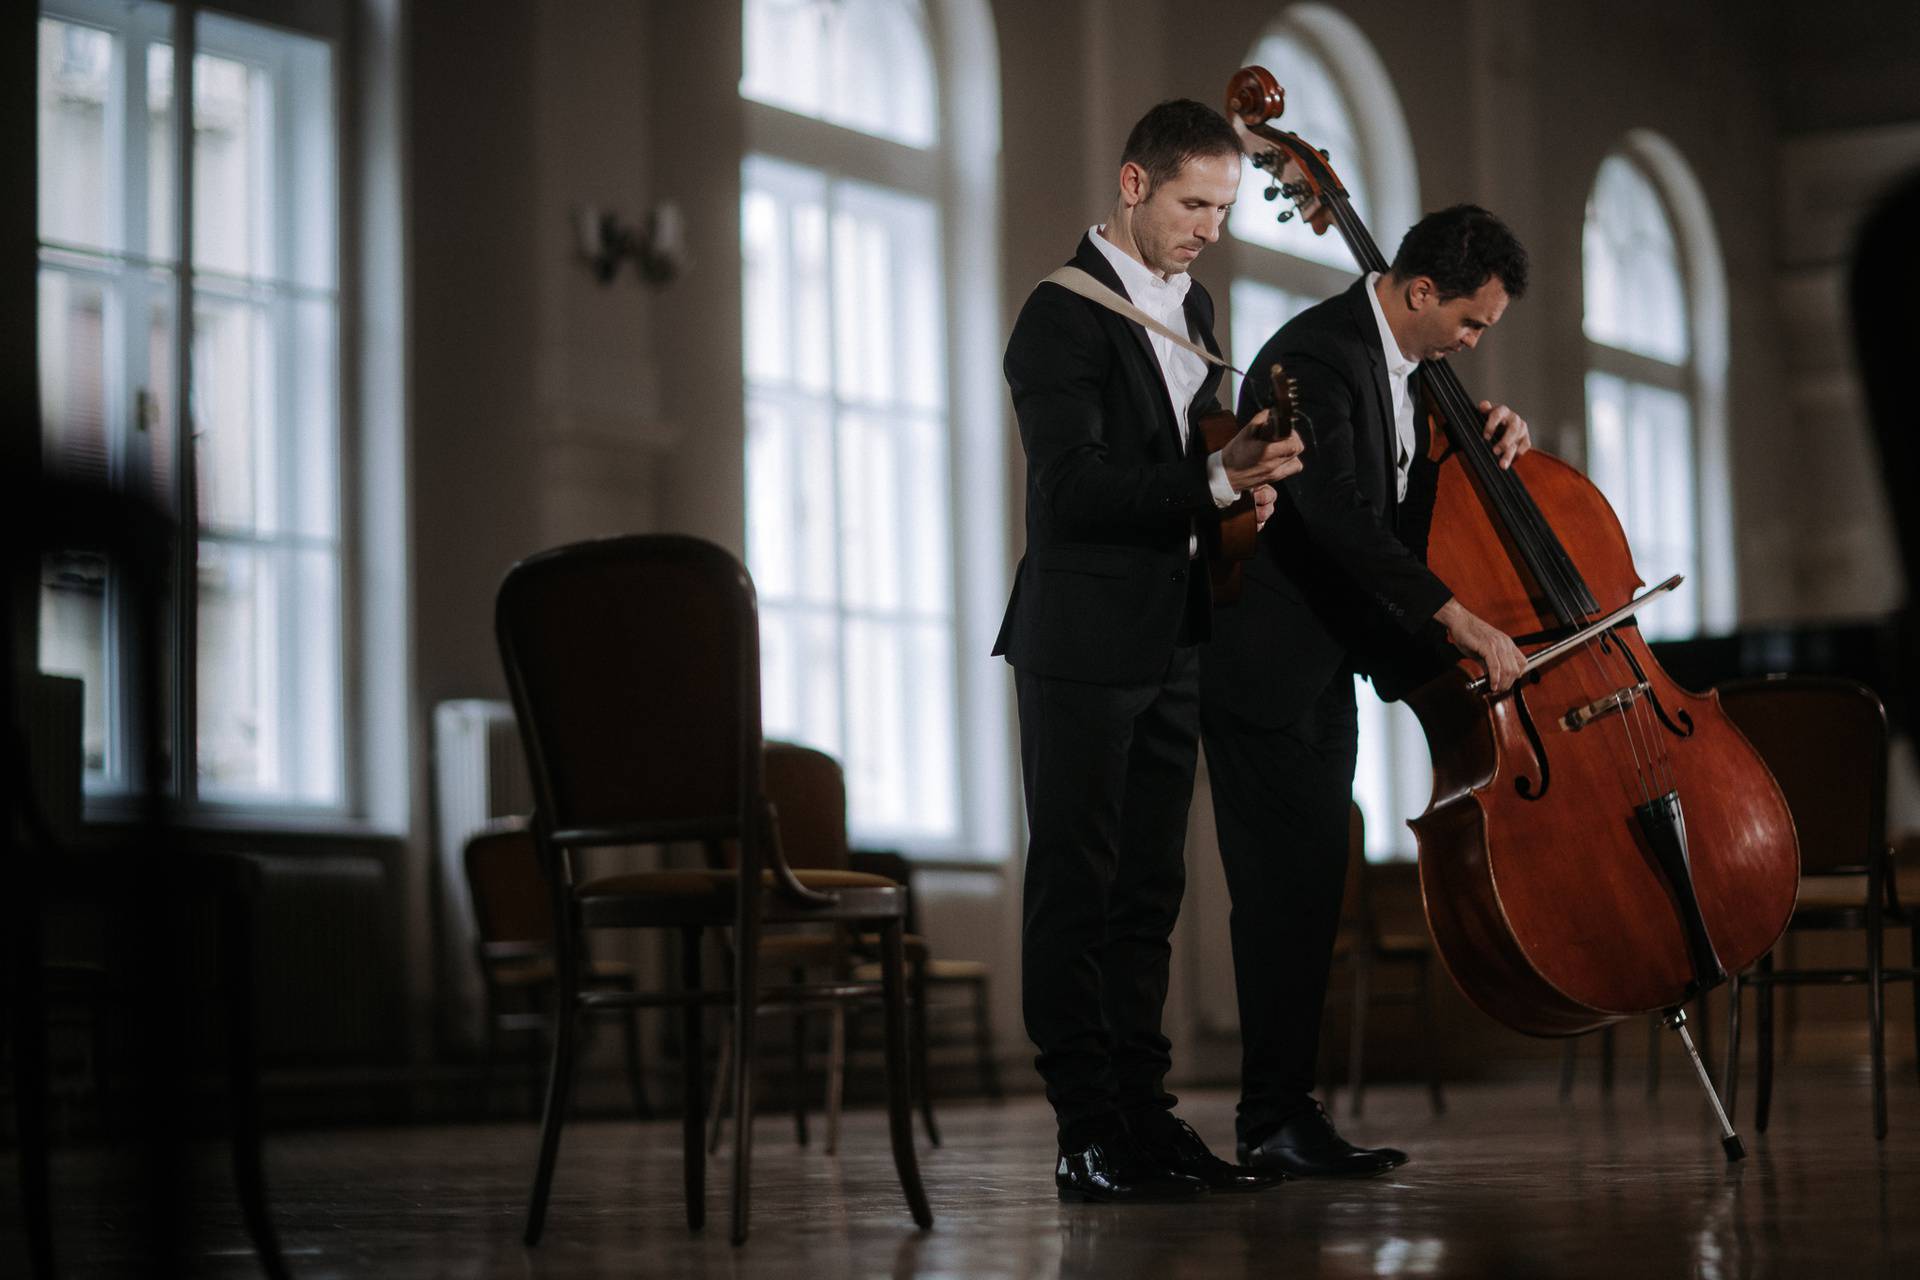 Glazbeni duo Hojsak & Novosel predstavio je svoj novi album inspiriran tradicijskom glazbom